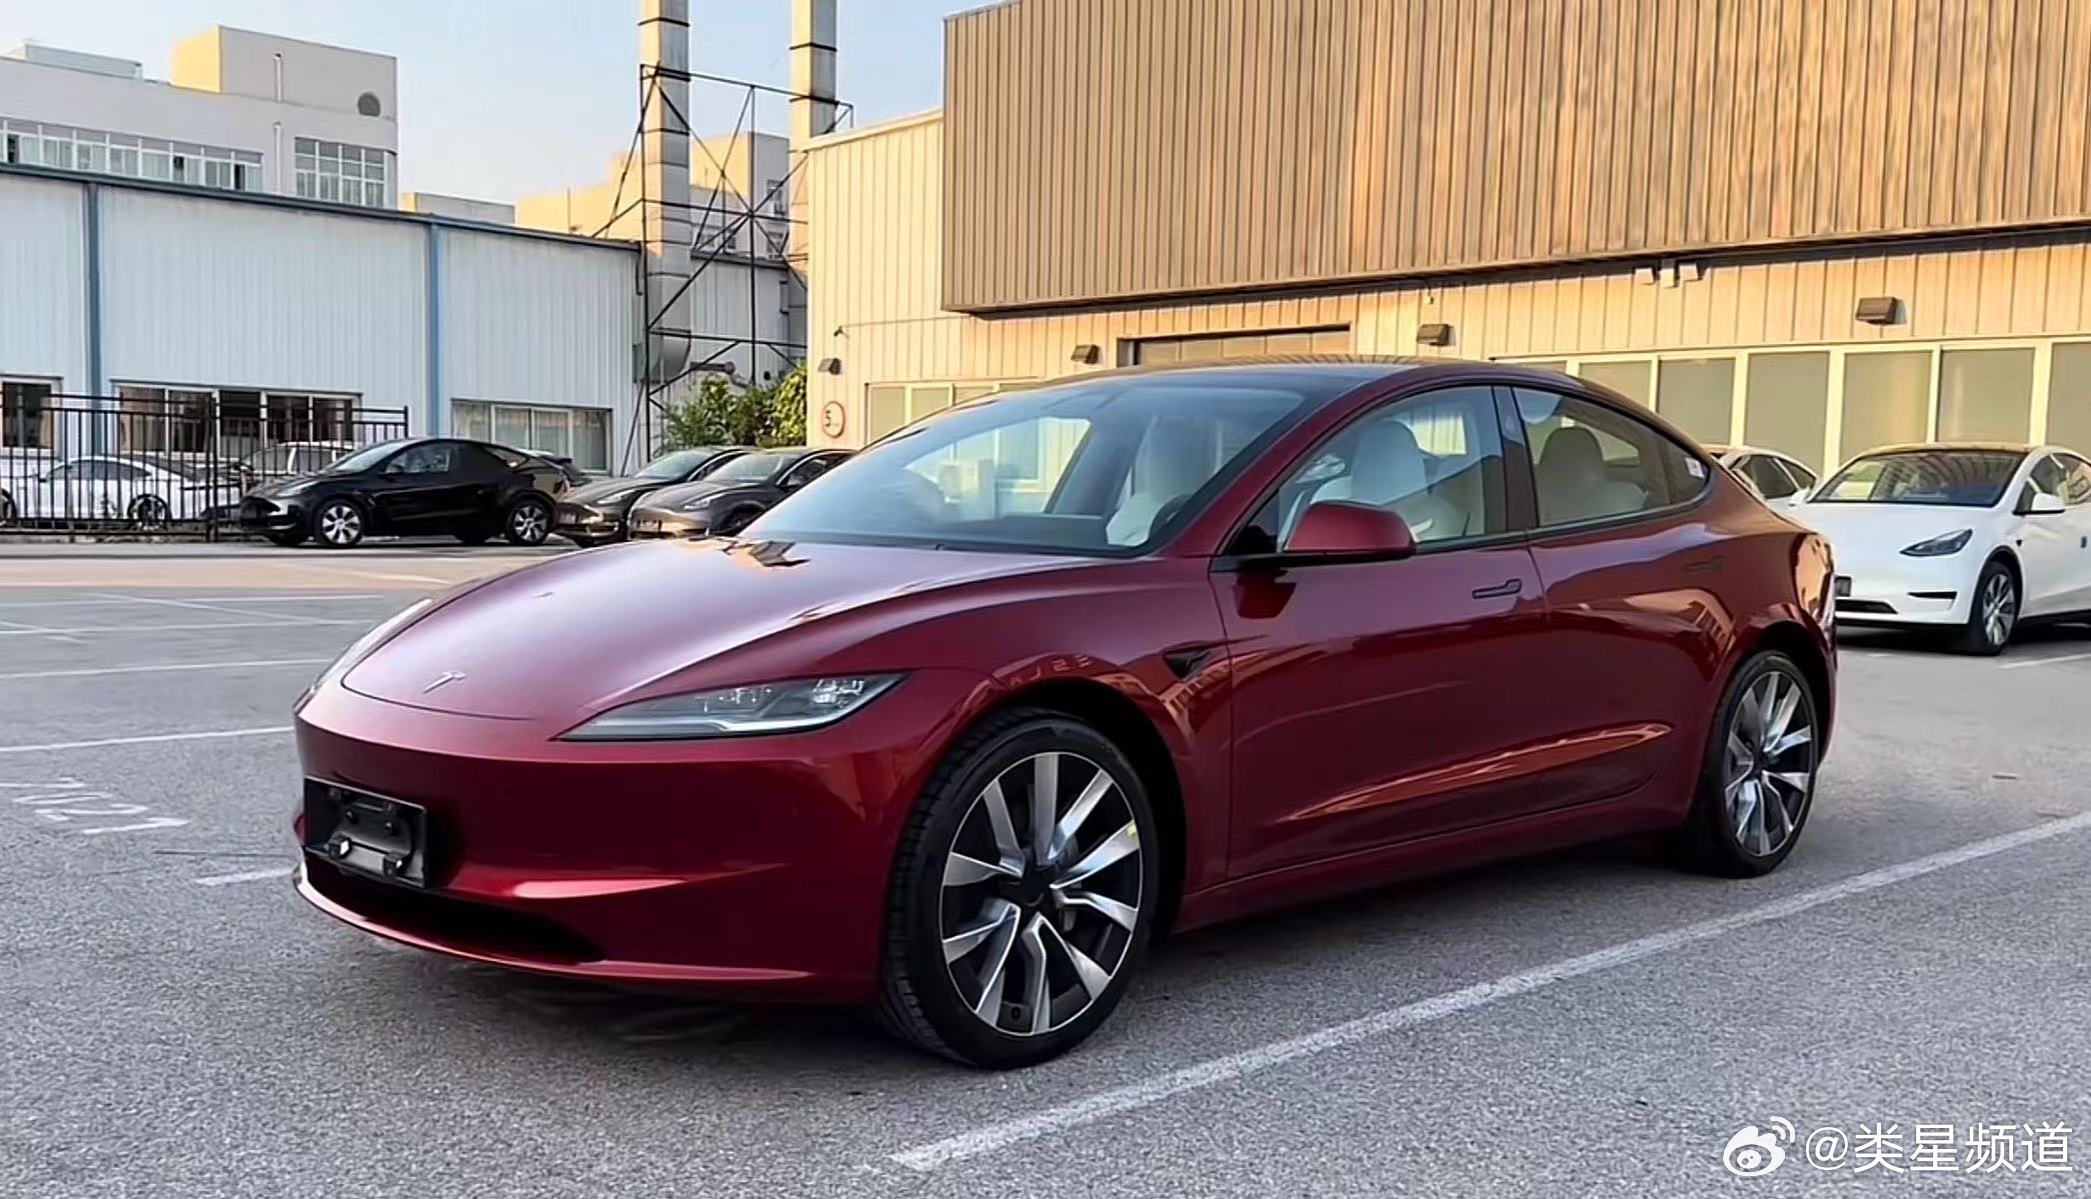 Tesla Model 3 Highland wurde möglicher weise in Europa entdeckt